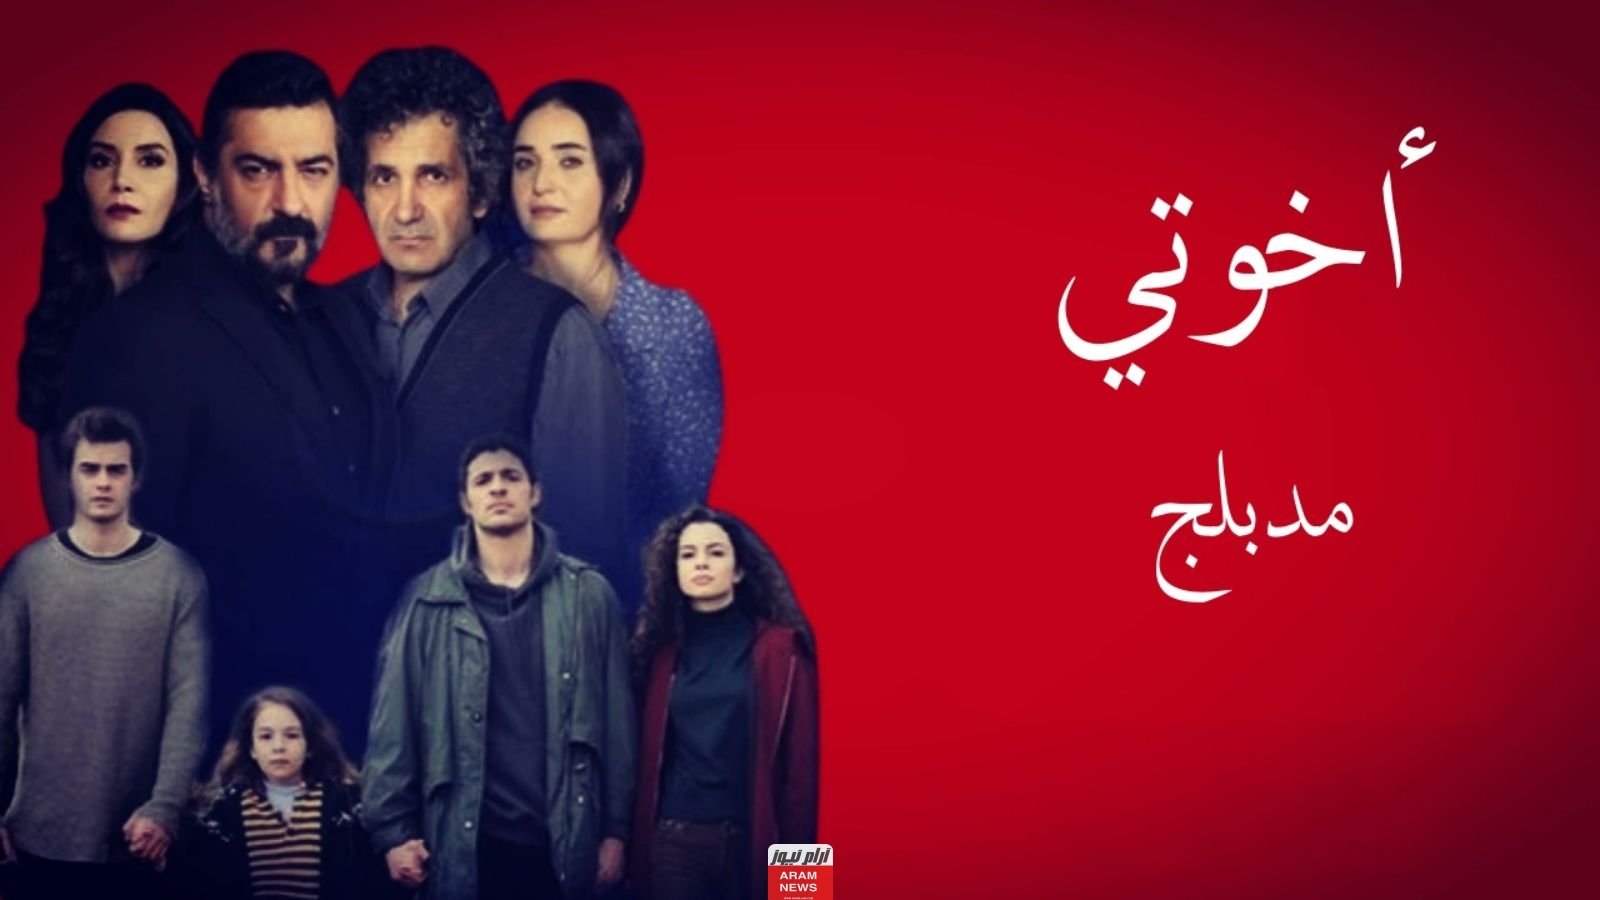 مشاهدة مسلسل اخوتي الحلقة 110 مترجمة للعربية كاملة HD برستيج قصة عشق